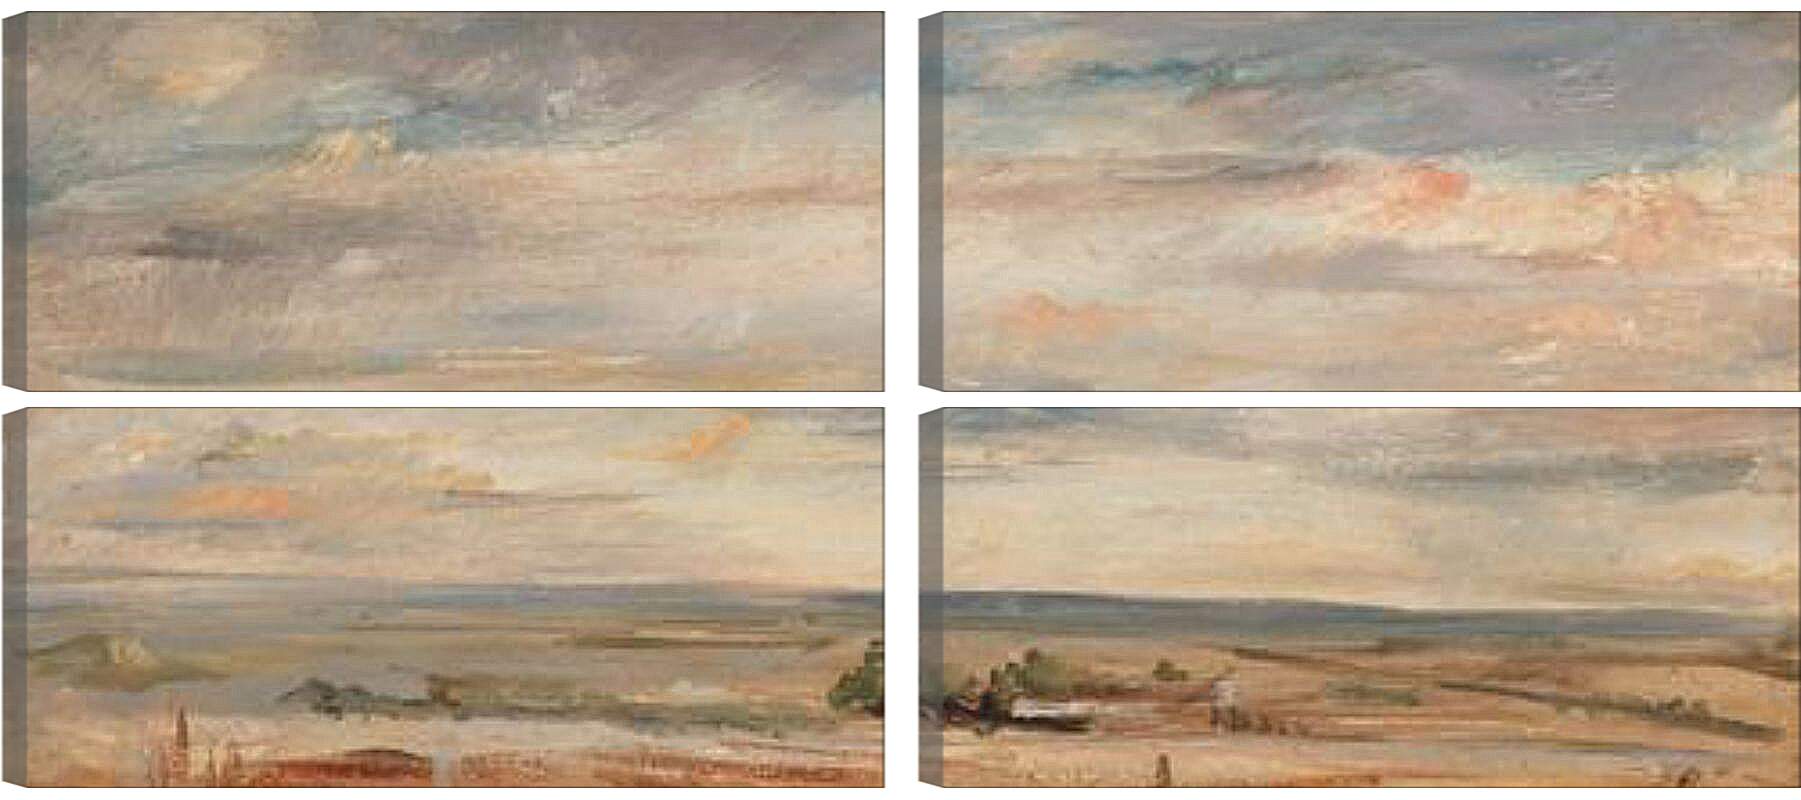 Модульная картина - Cloud Study, Early Morning, Looking East from Hampstead. Джон Констебл